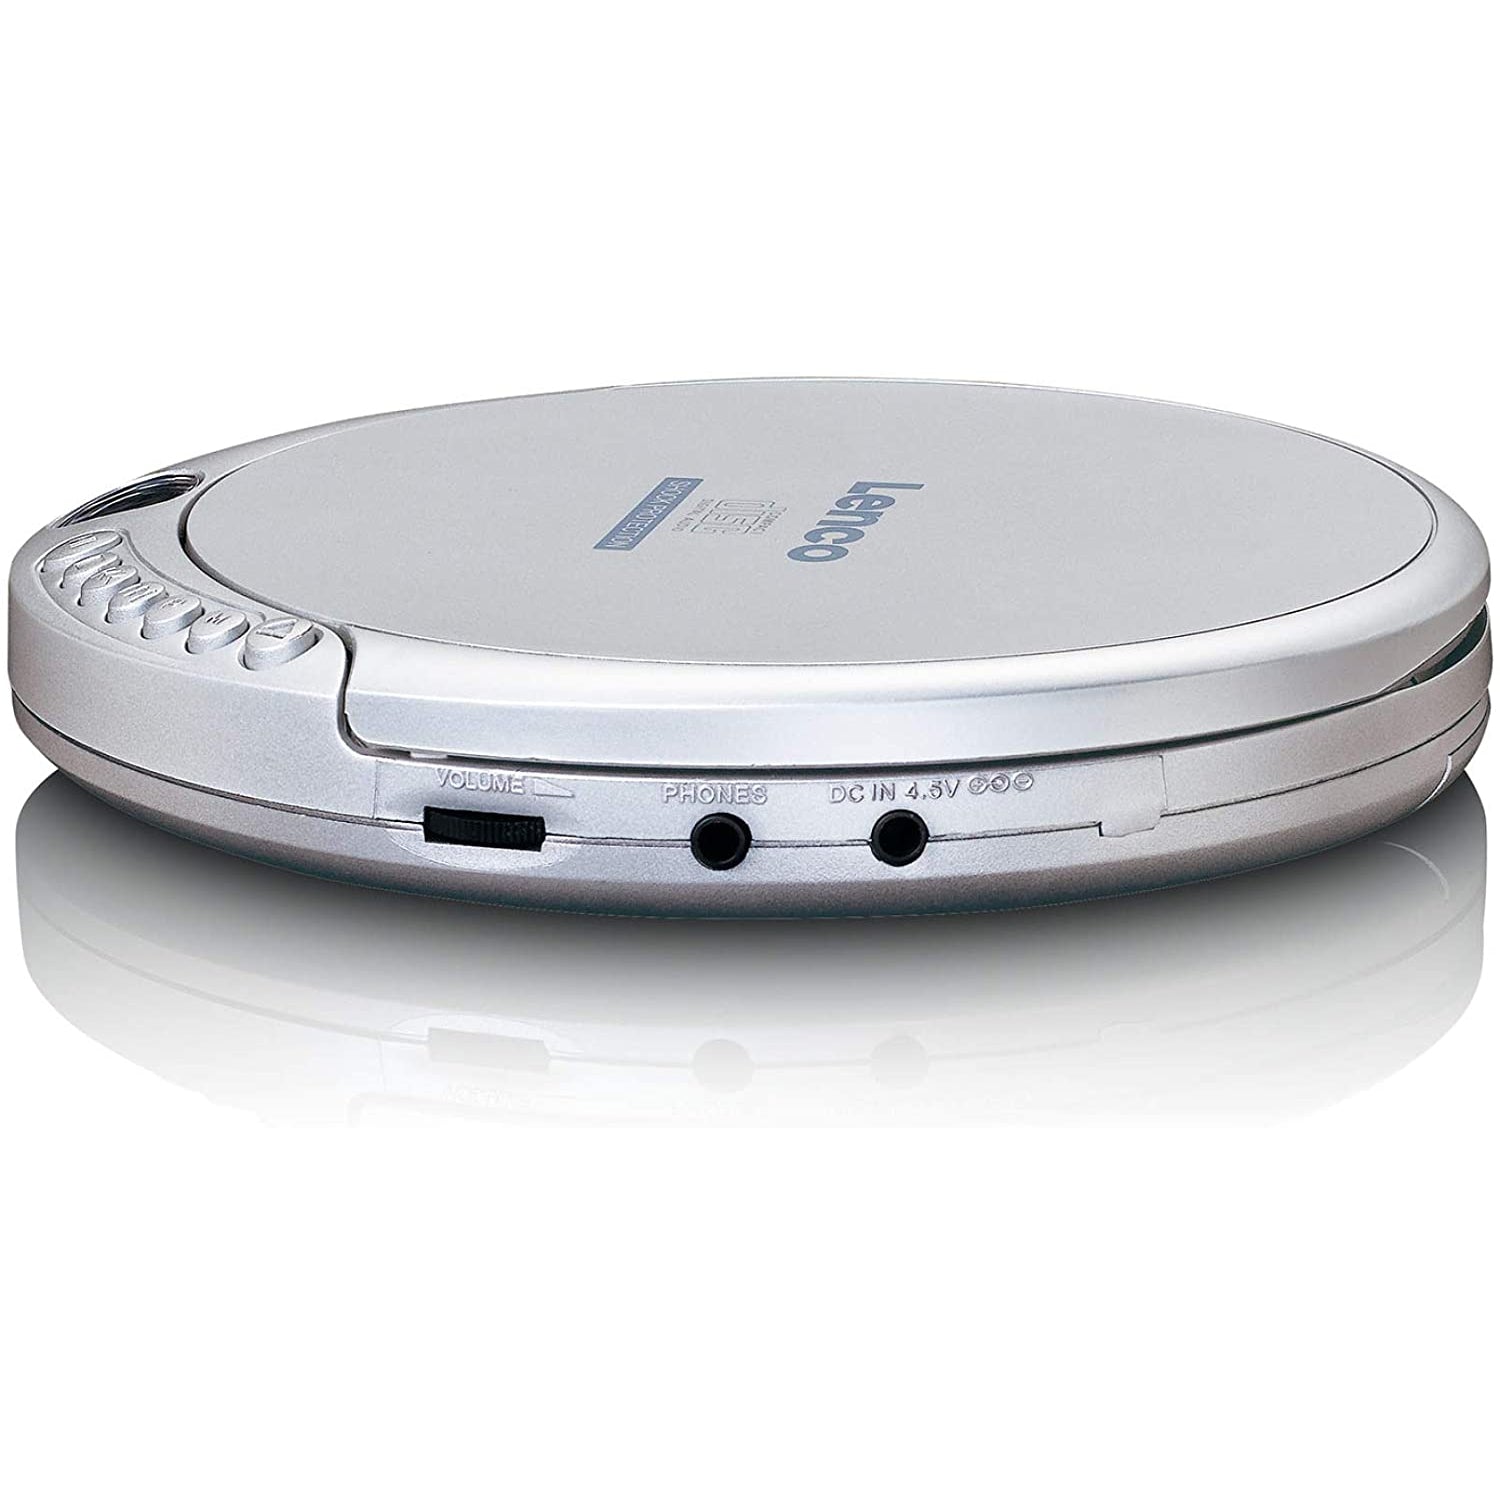 Lenco CD-201 Portable CD Player - Silver